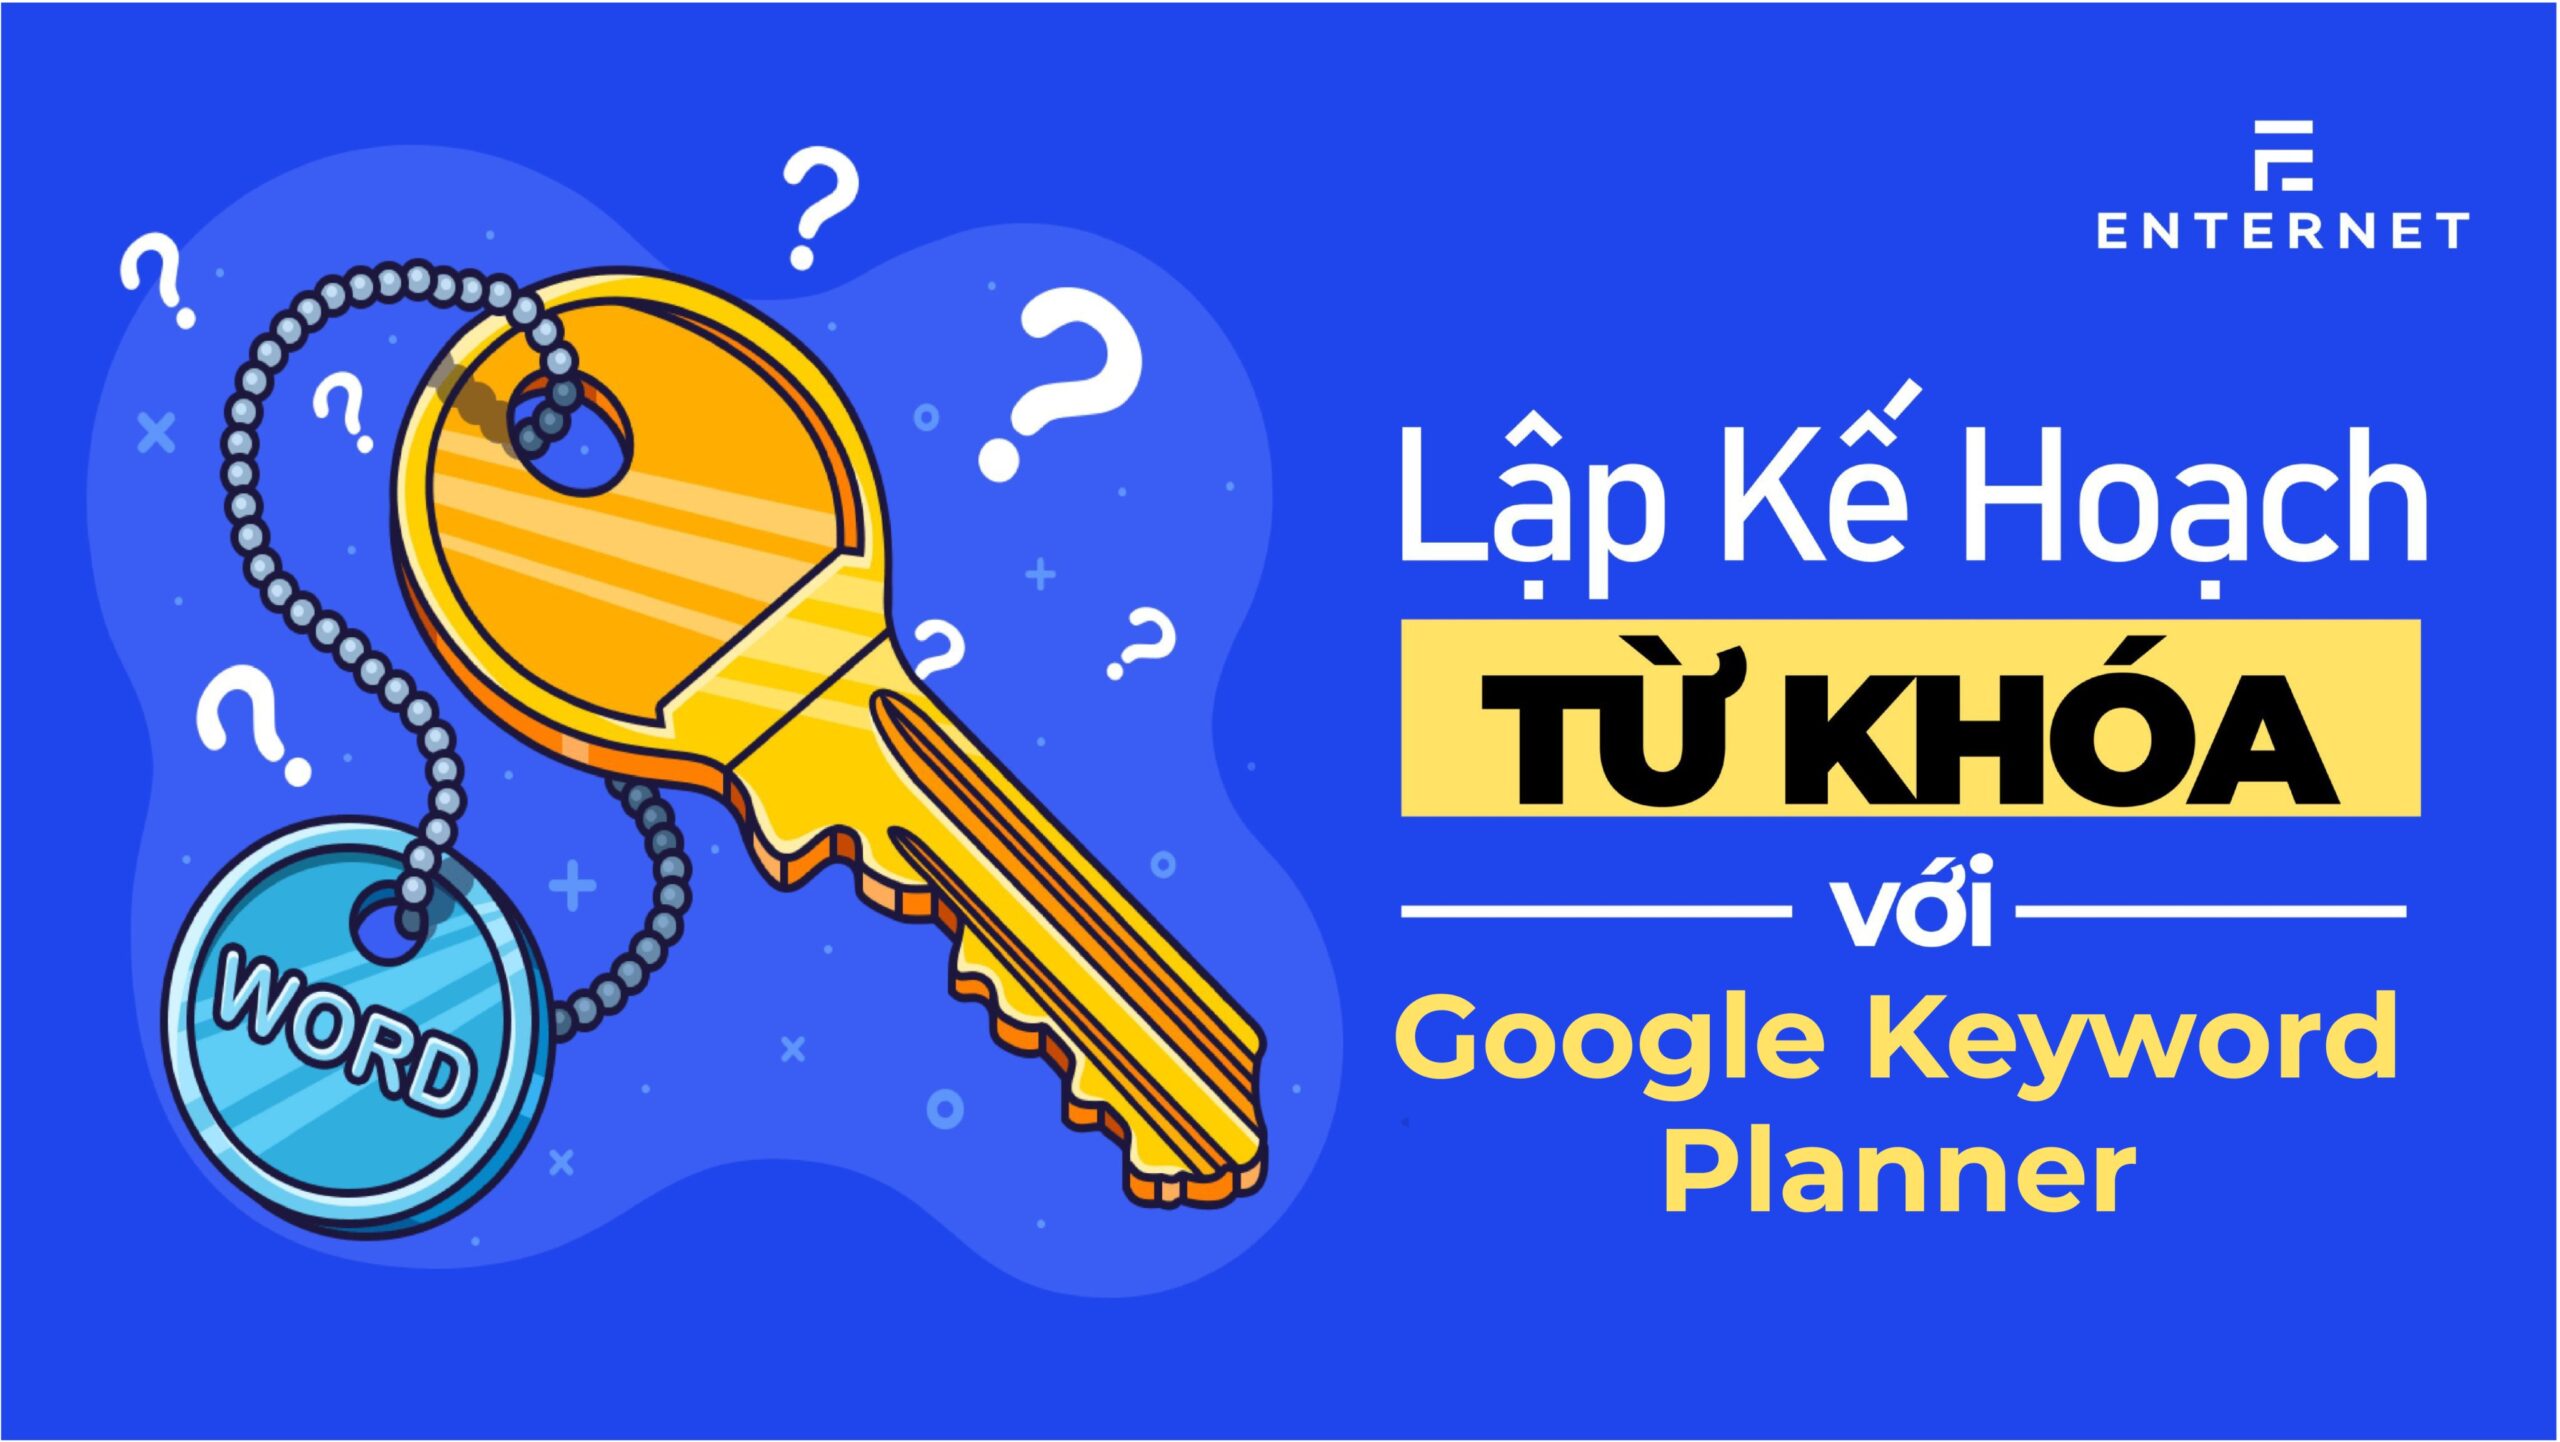 Lập kế hoạch từ khóa với Google Keyword Planner - Thanh Thịnh Bùi: Giúp bạn thành công với Bán hàng online